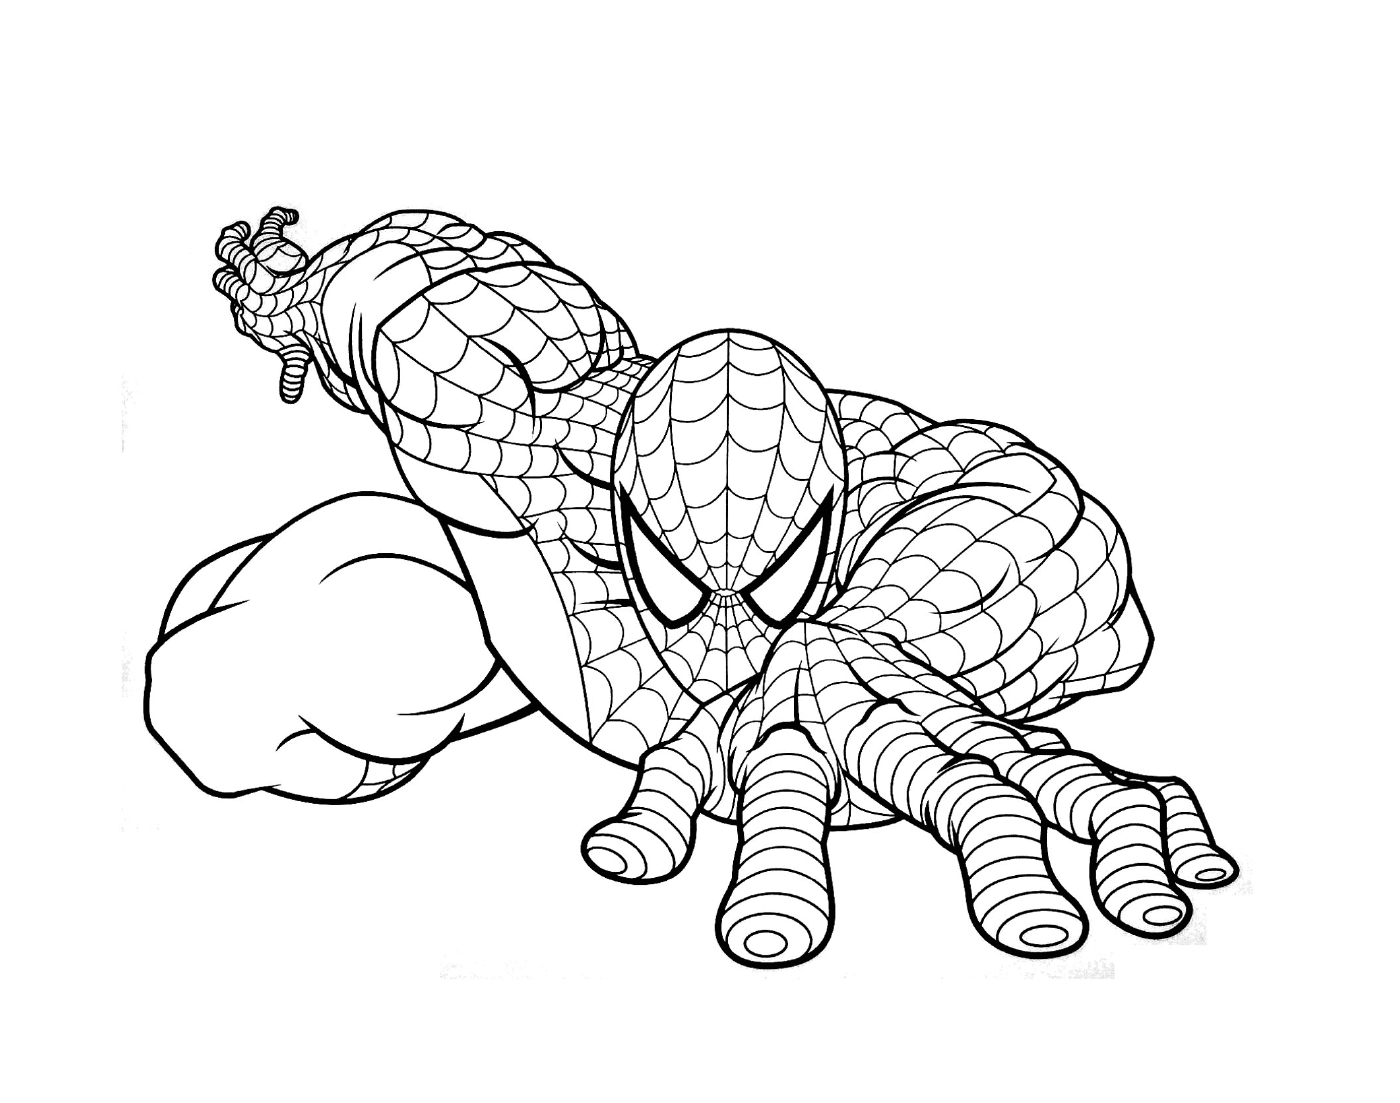  Человек-паук, представленный на рисунке 